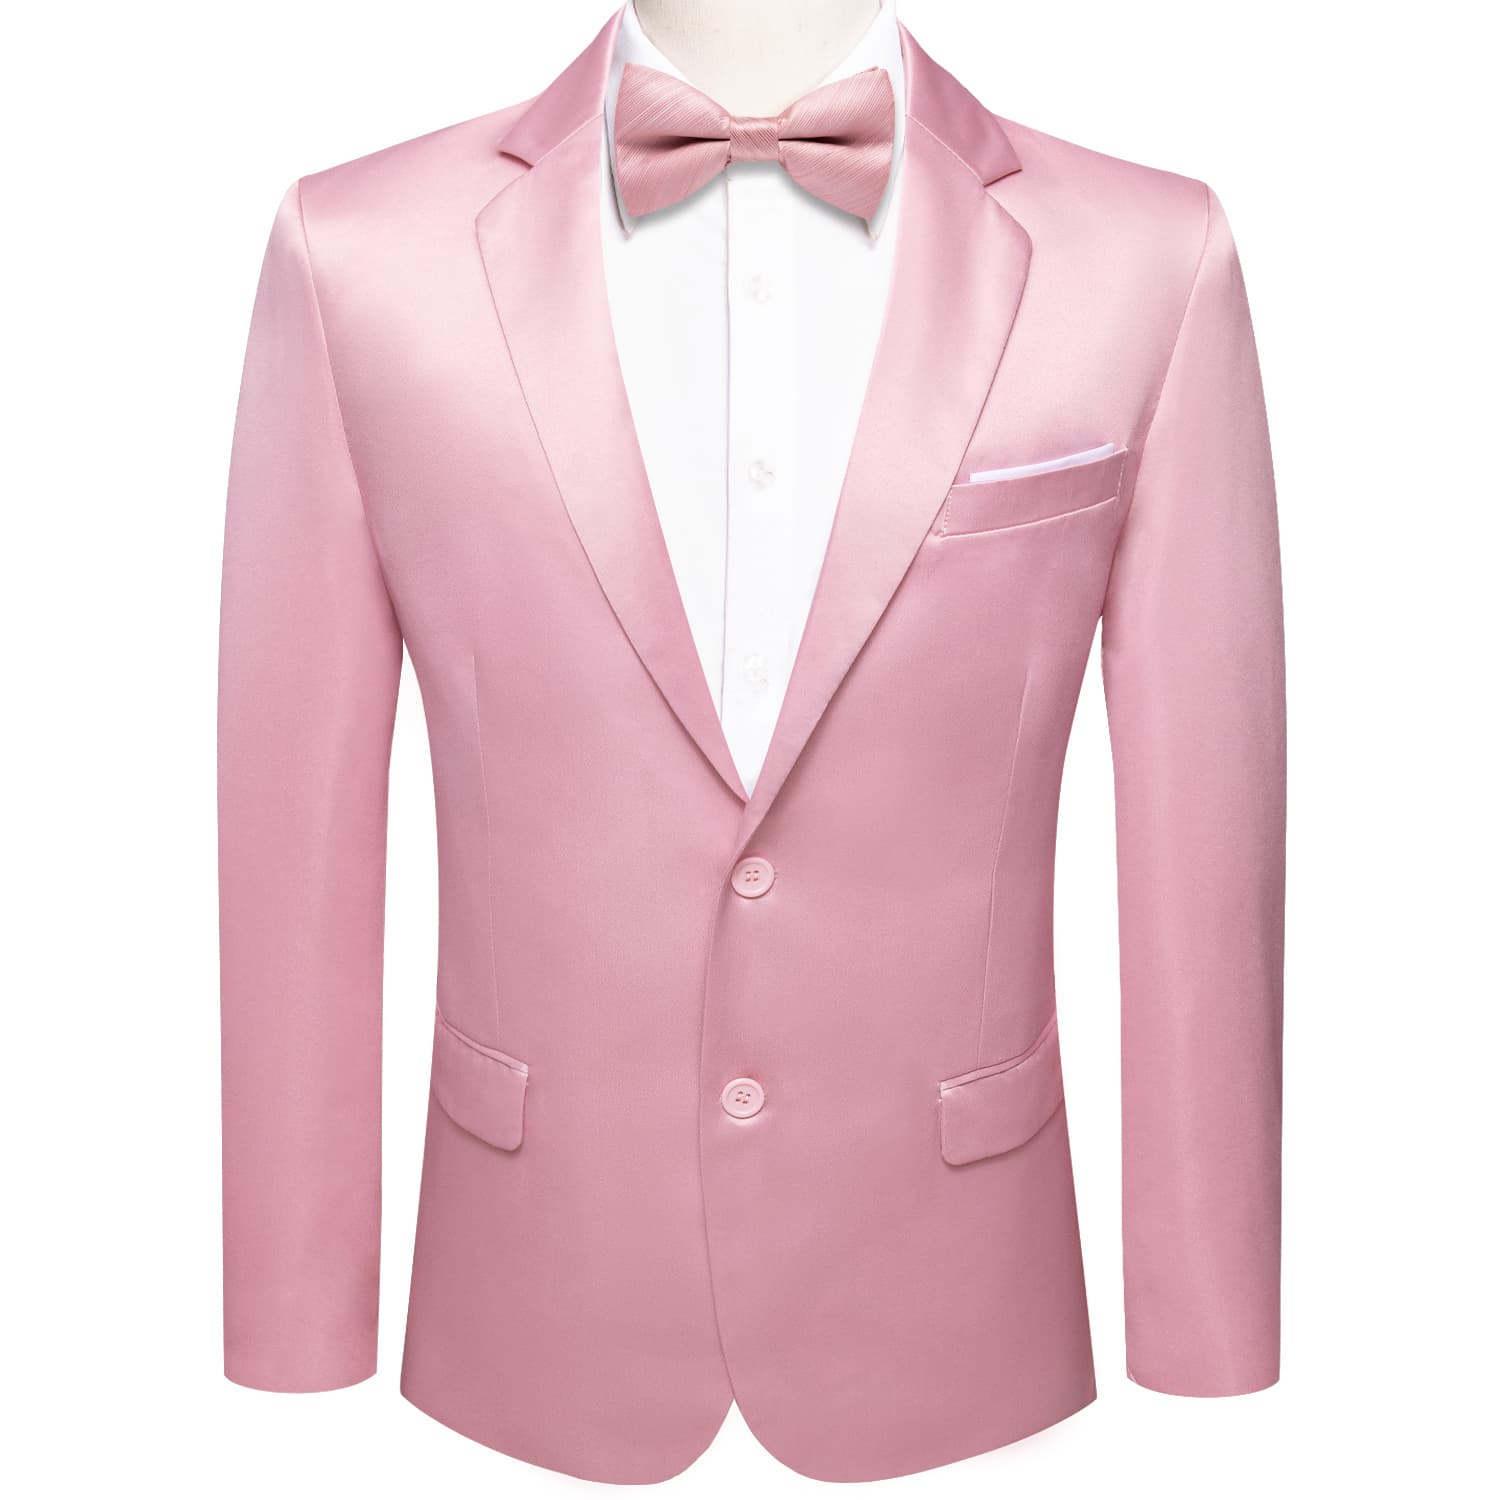  Blazer Pink Men's Wedding Business Solid Top Men Suit